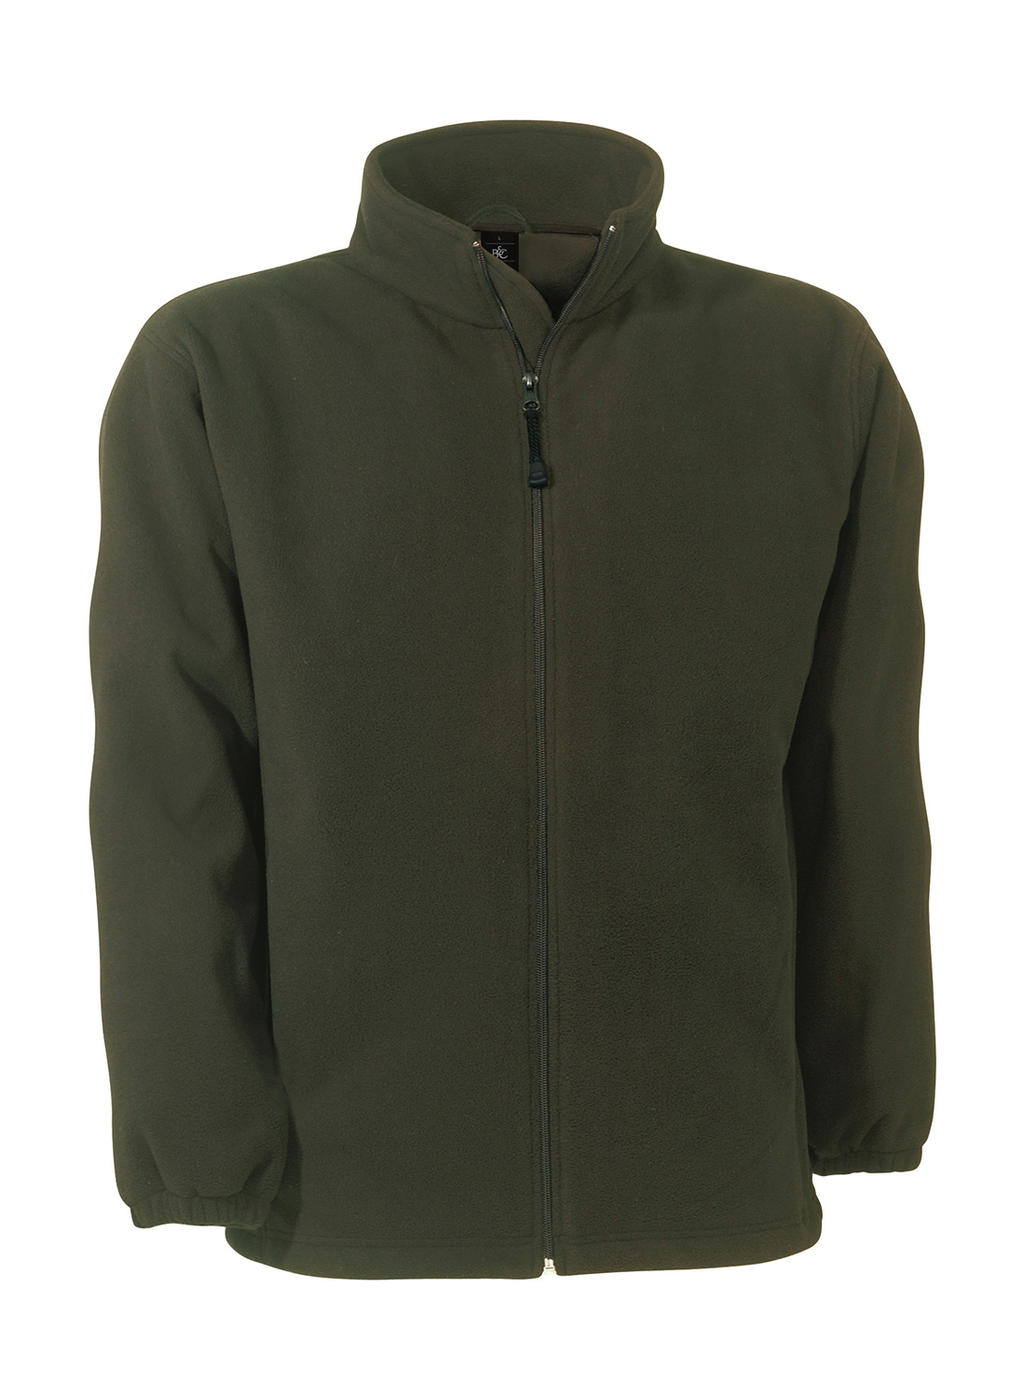  WindProtek Waterproof Fleece Jacket in Farbe Olive